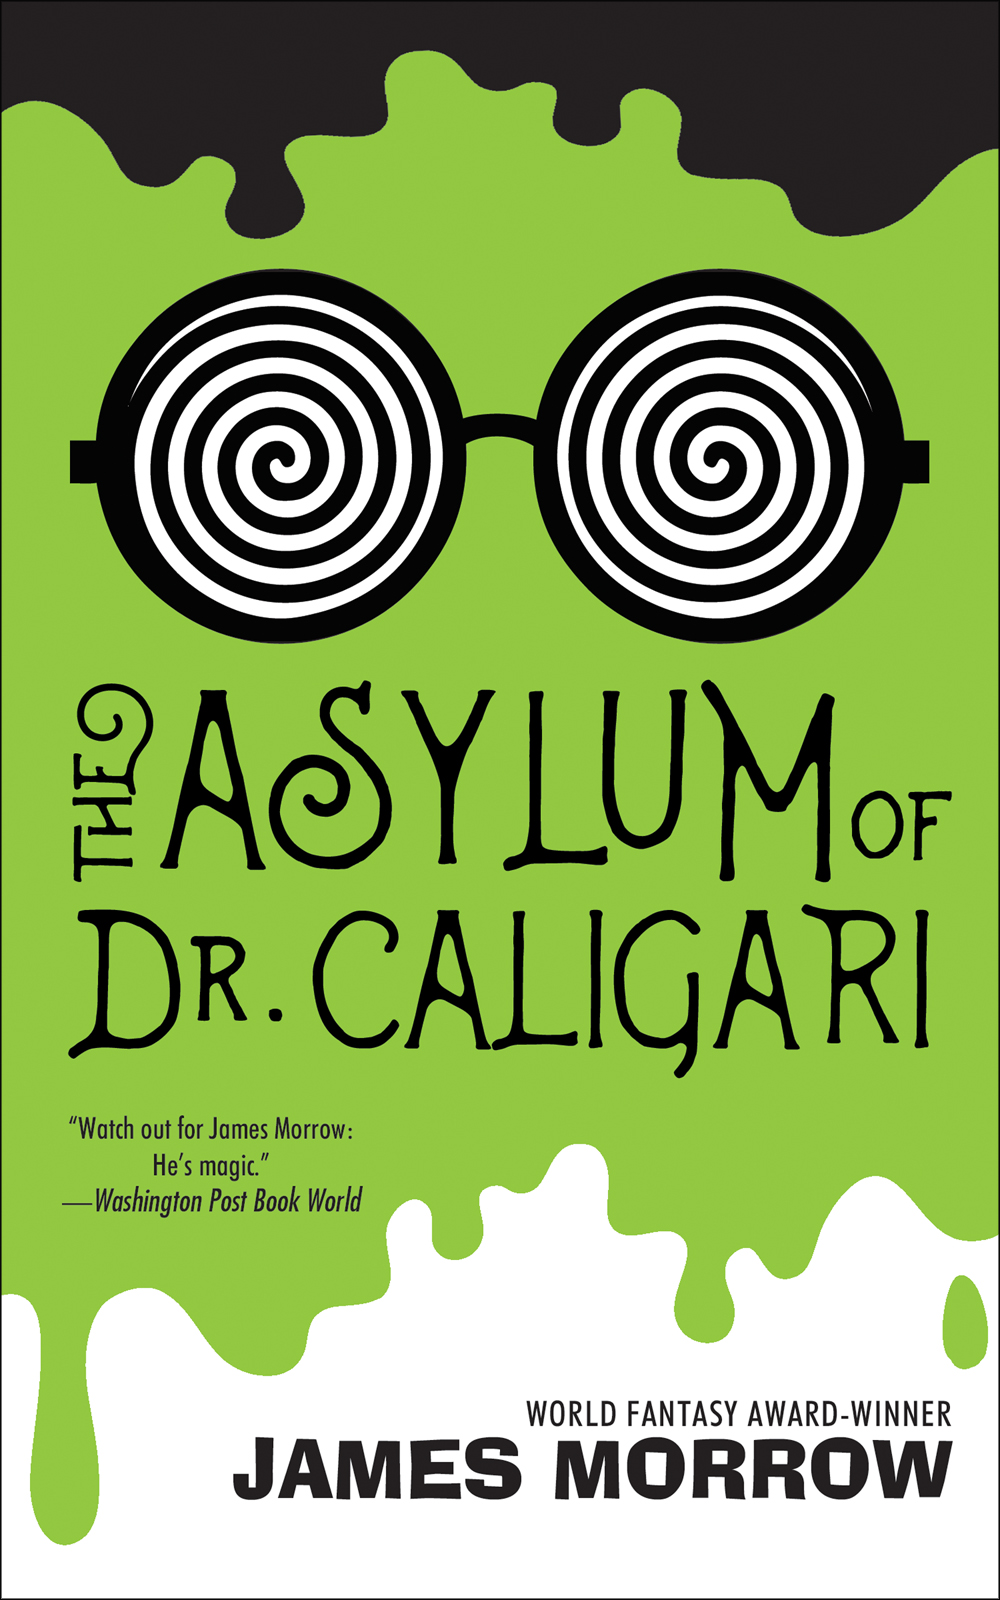 Asylum of Dr Caligari